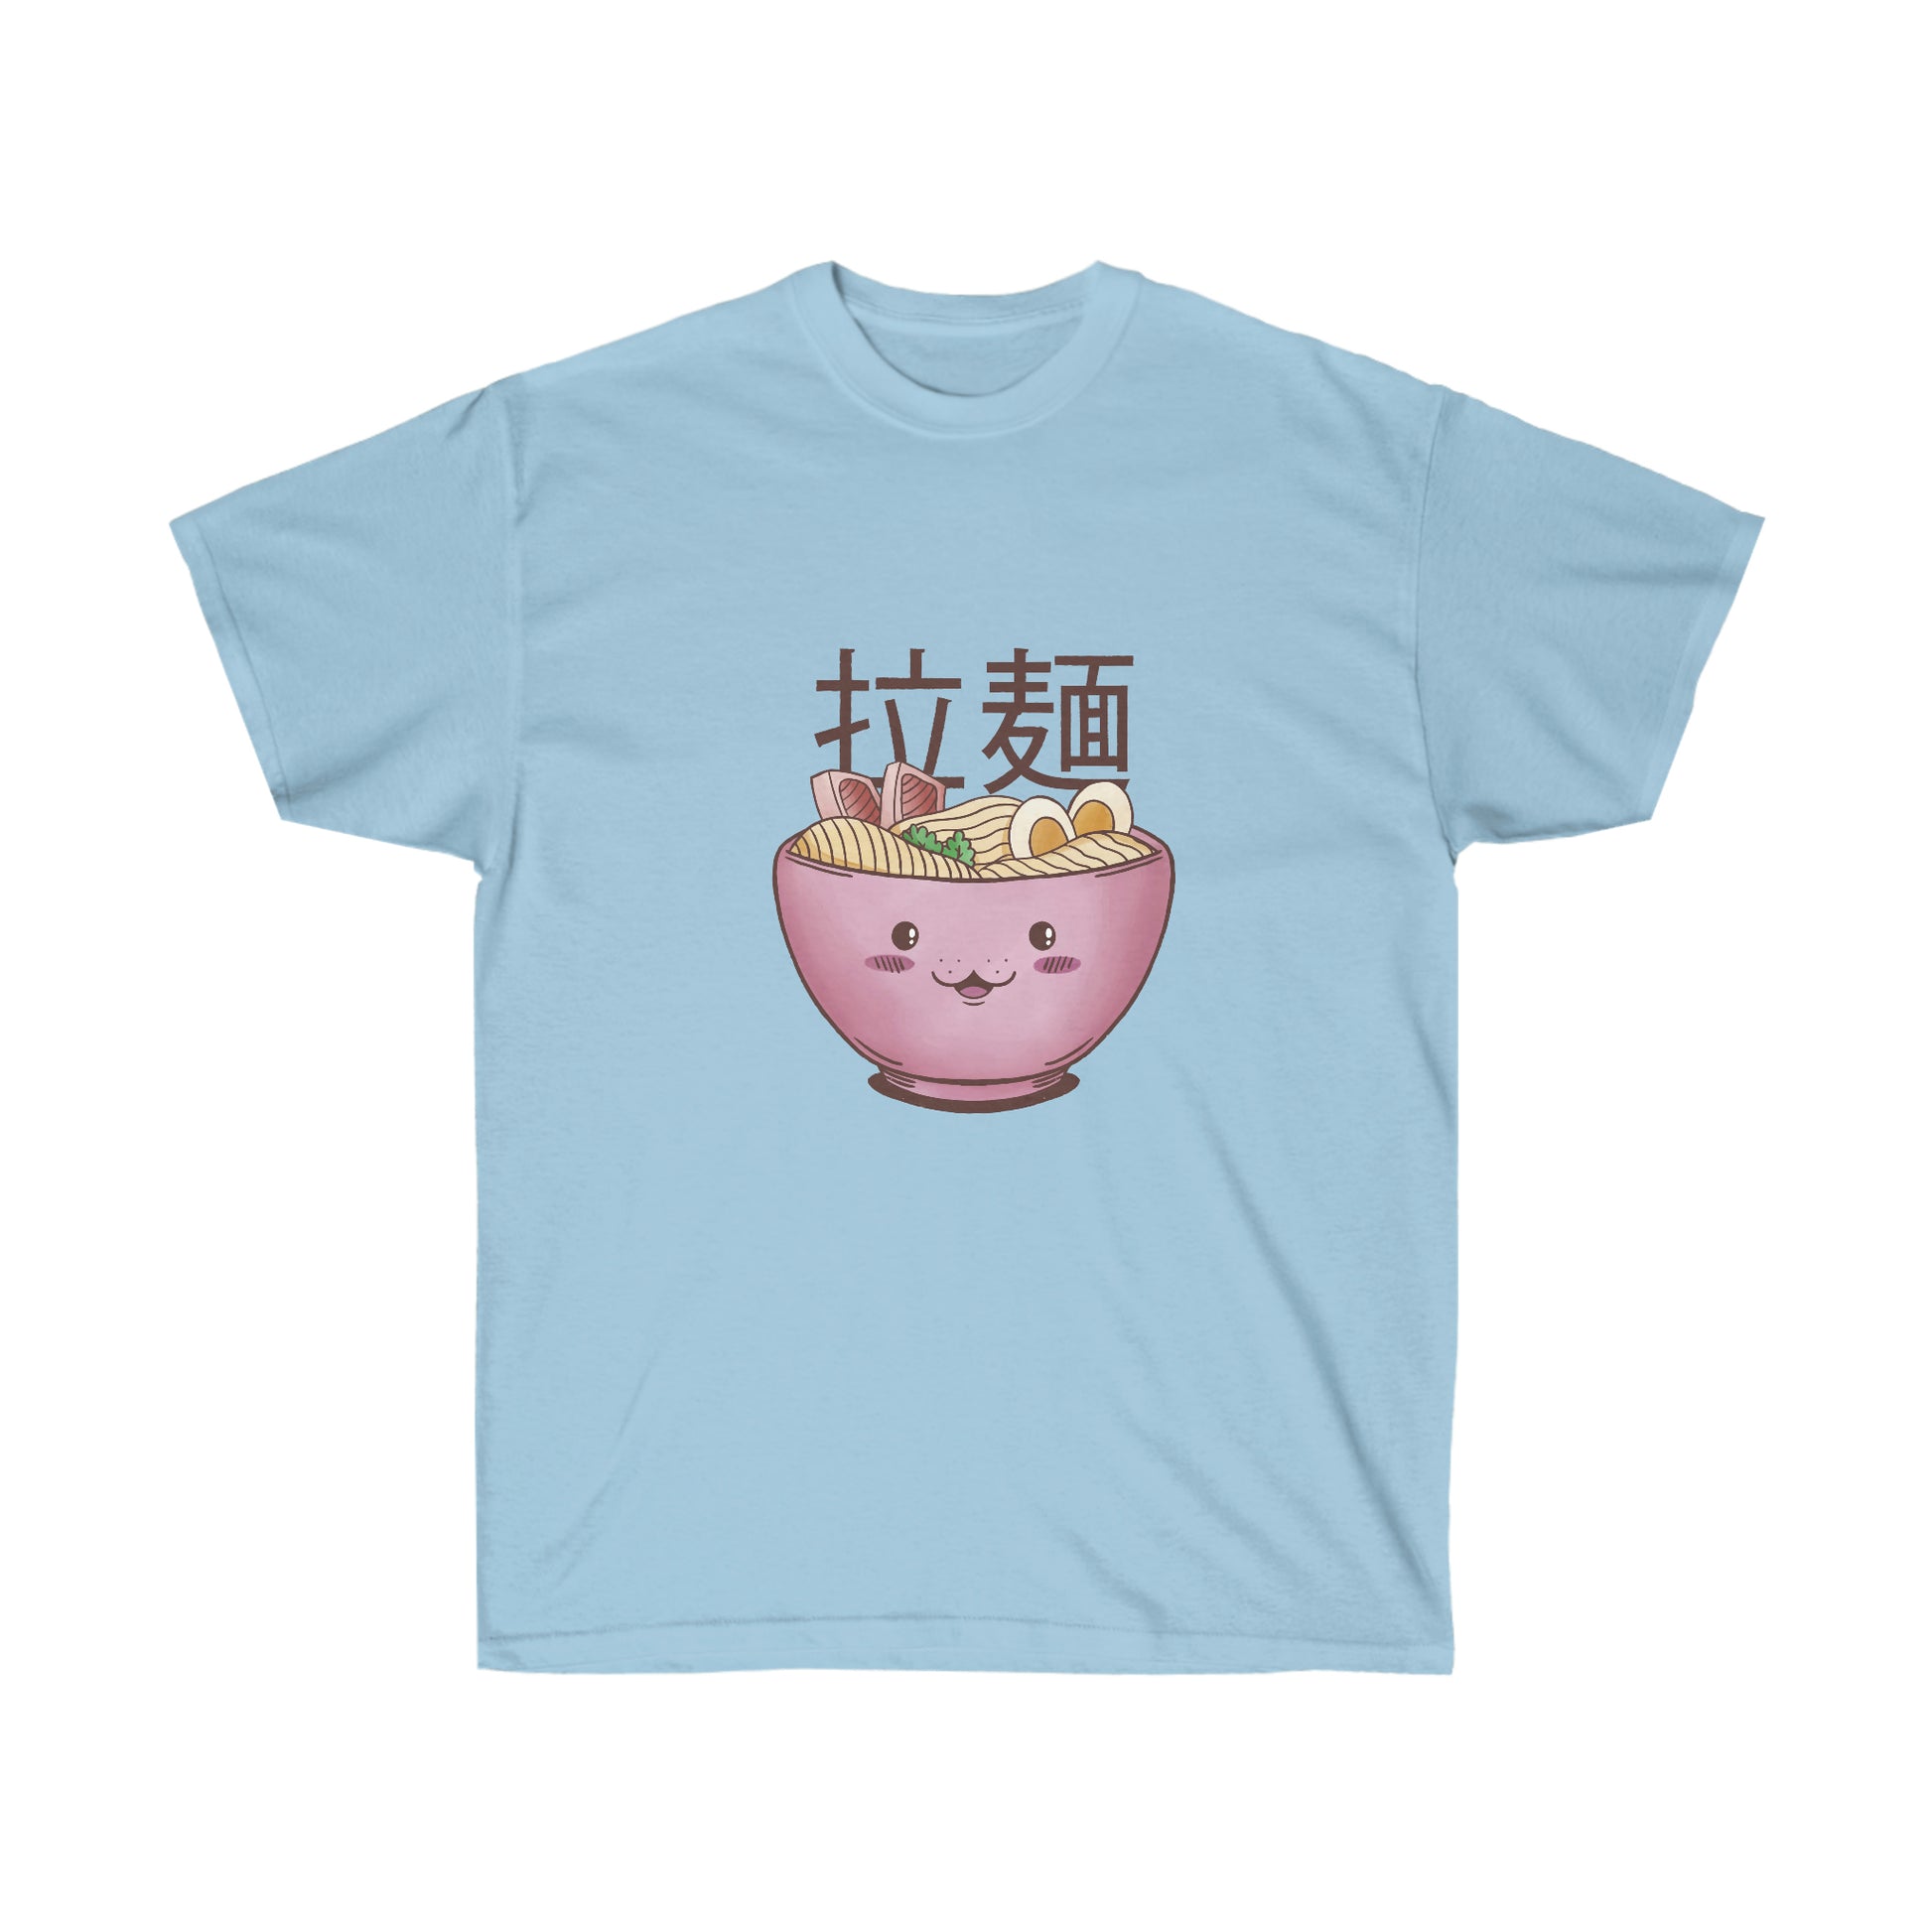 Kawaii Sweatshirt, Kawaii Clothing, Kawaii Clothes, Yami Kawaii Aesthetic, Pastel Kawaii Ramen Sweatshirt T-Shirt